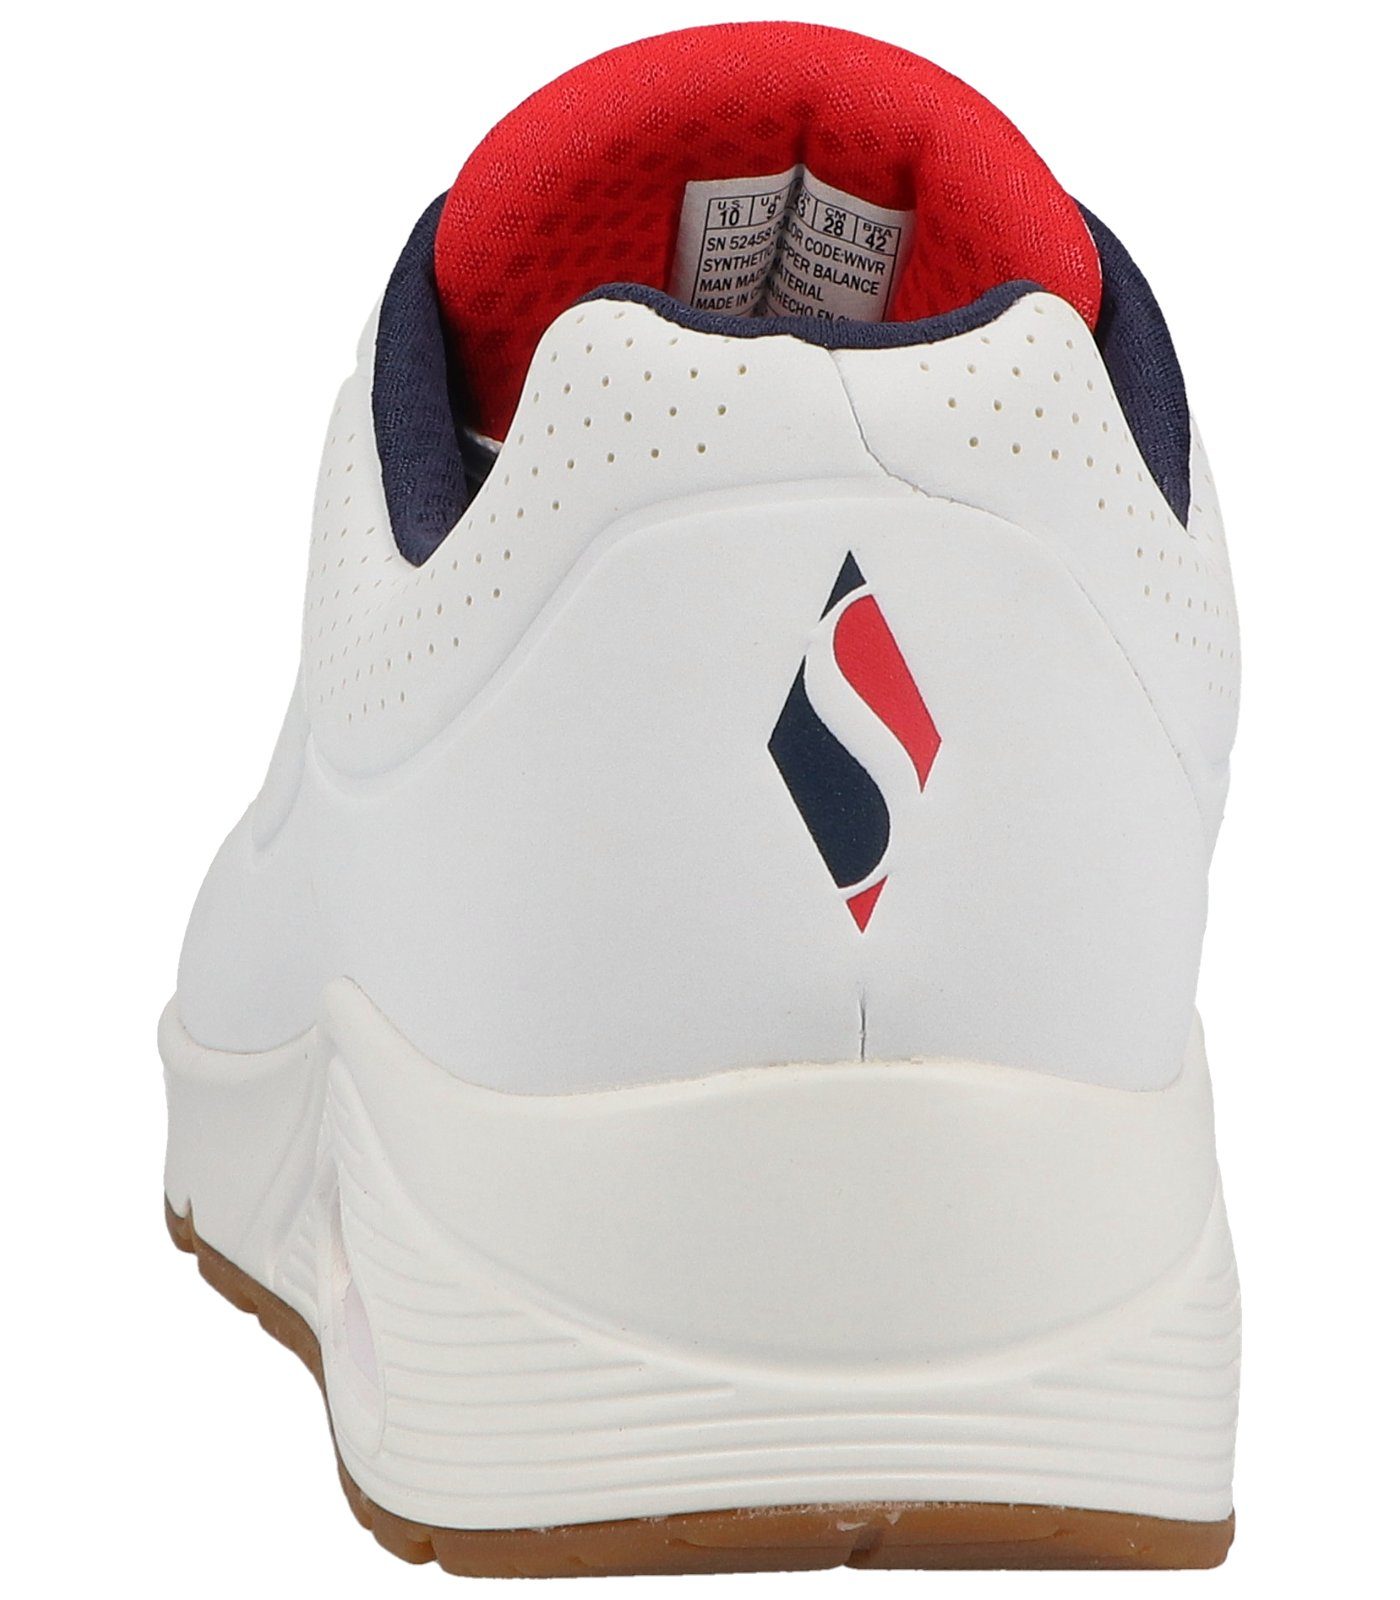 Lederimitat Sneaker Skechers Sneaker white/navy/red